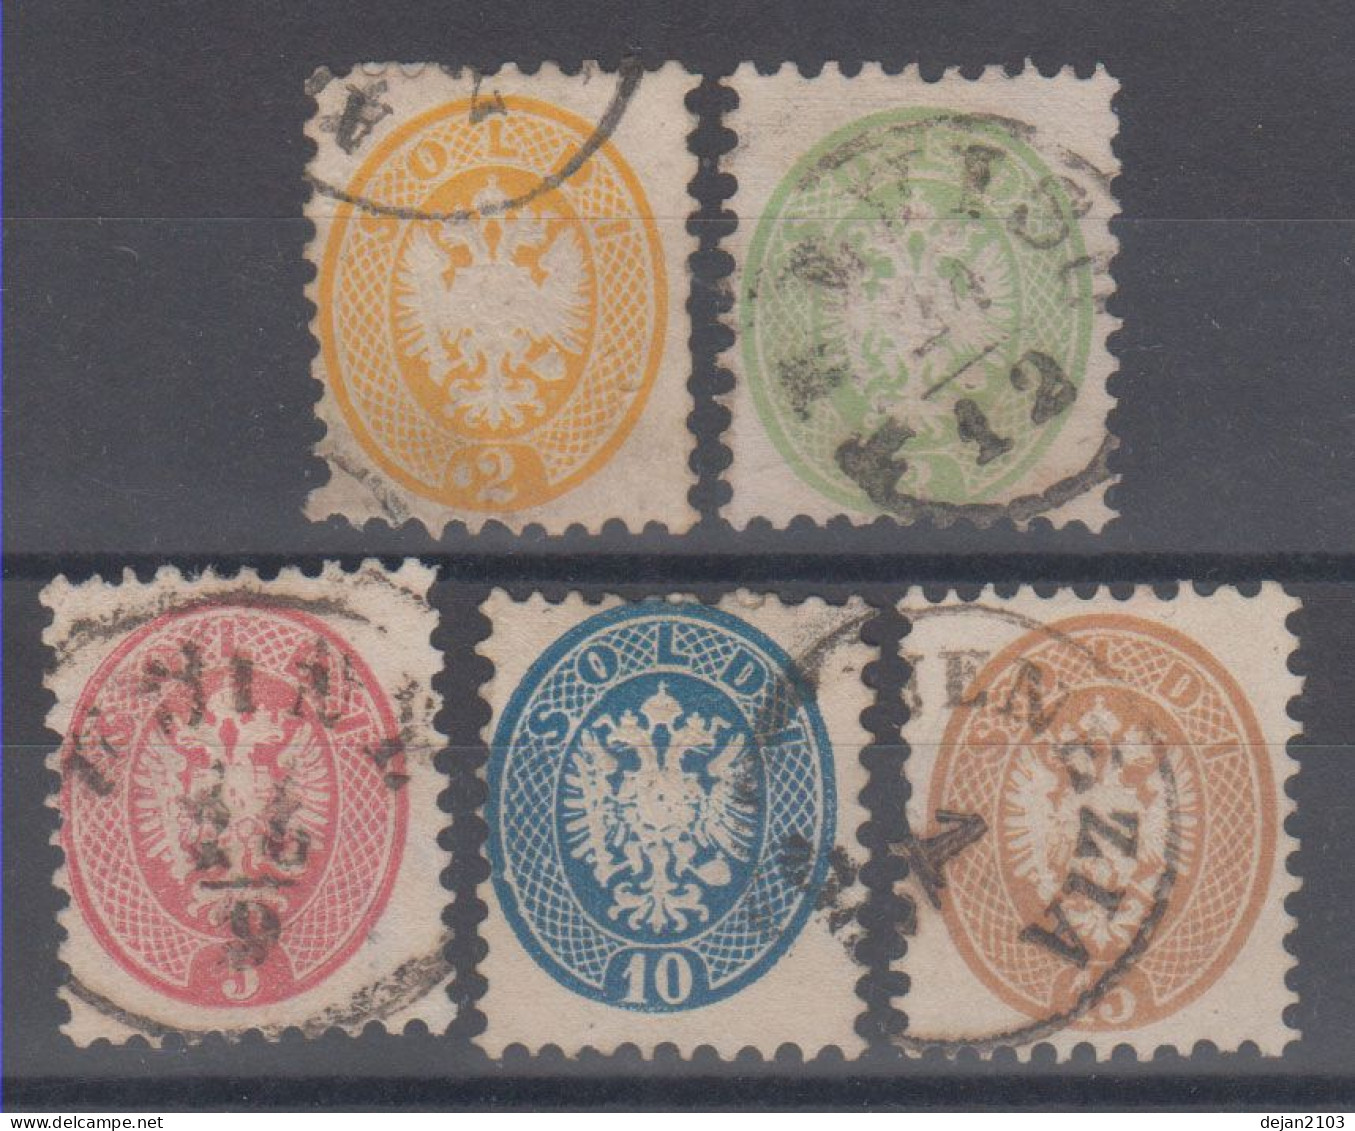 Austria Occupation Lombardia Watermark "BRIEFMARKEN" Mi#19/23 Perf. 9 1/2 1864 USED - Used Stamps